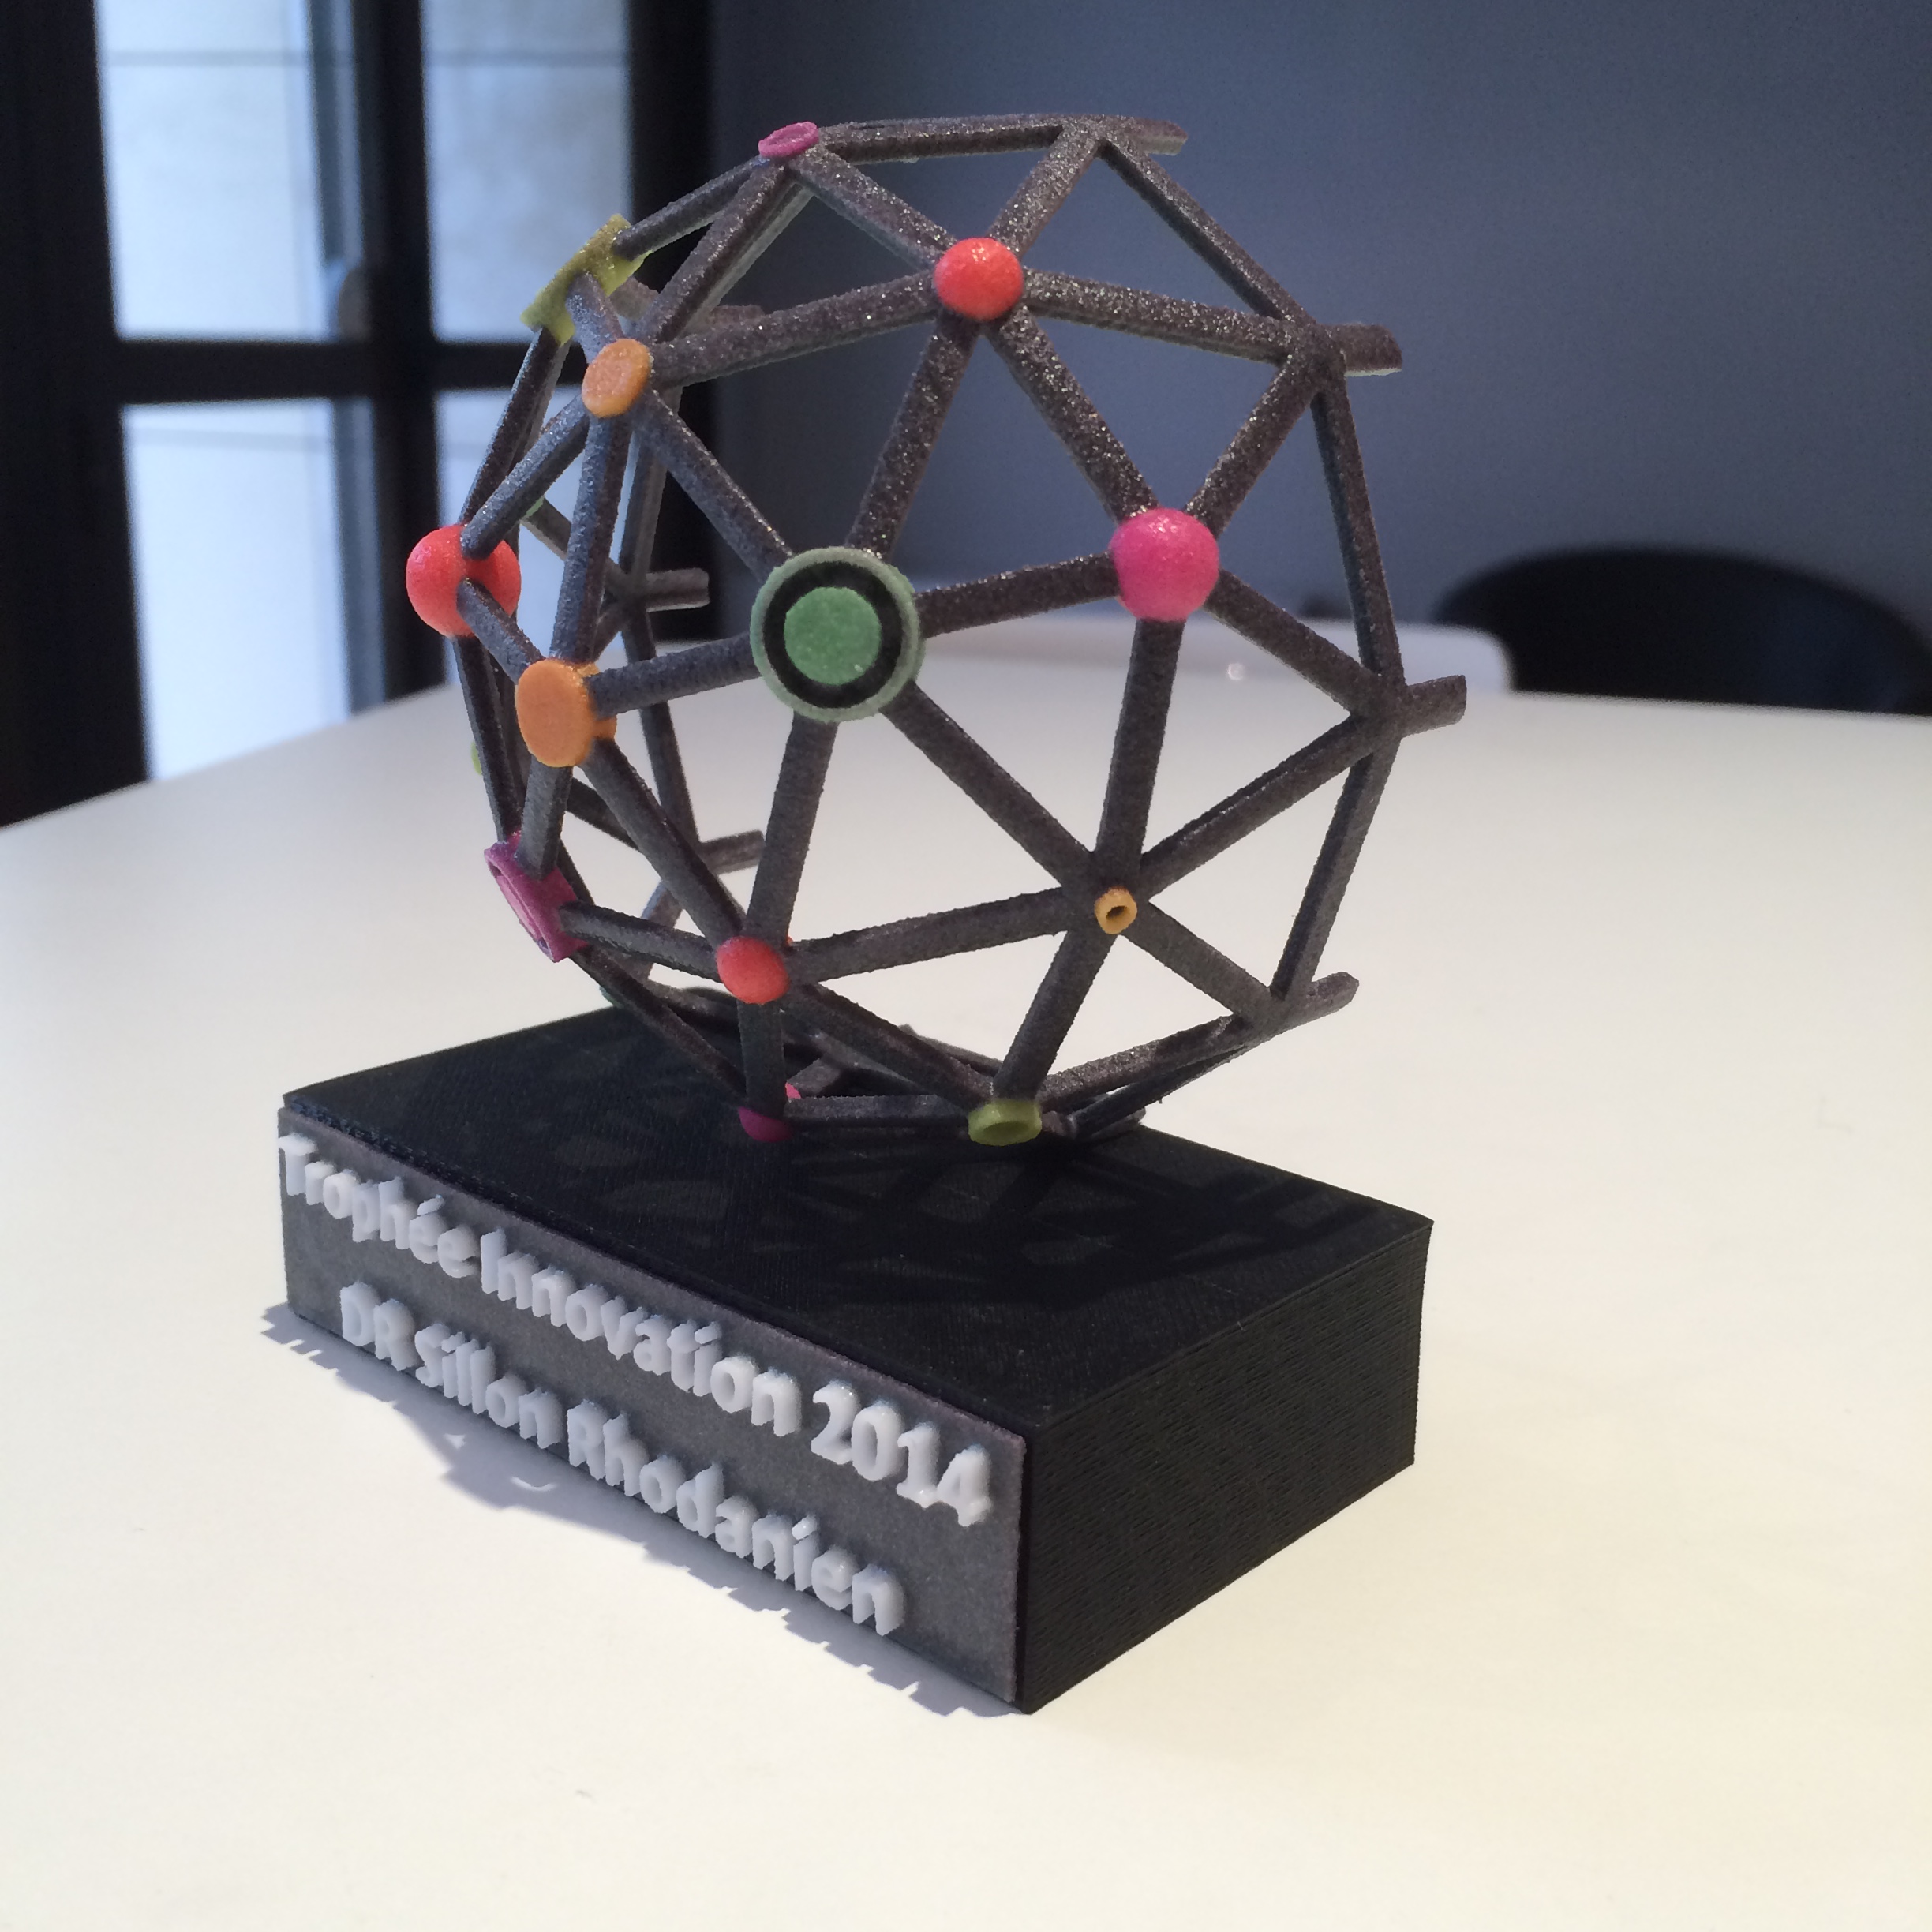 Trophée Innovation 2014 ERDF - imprimé en 3D